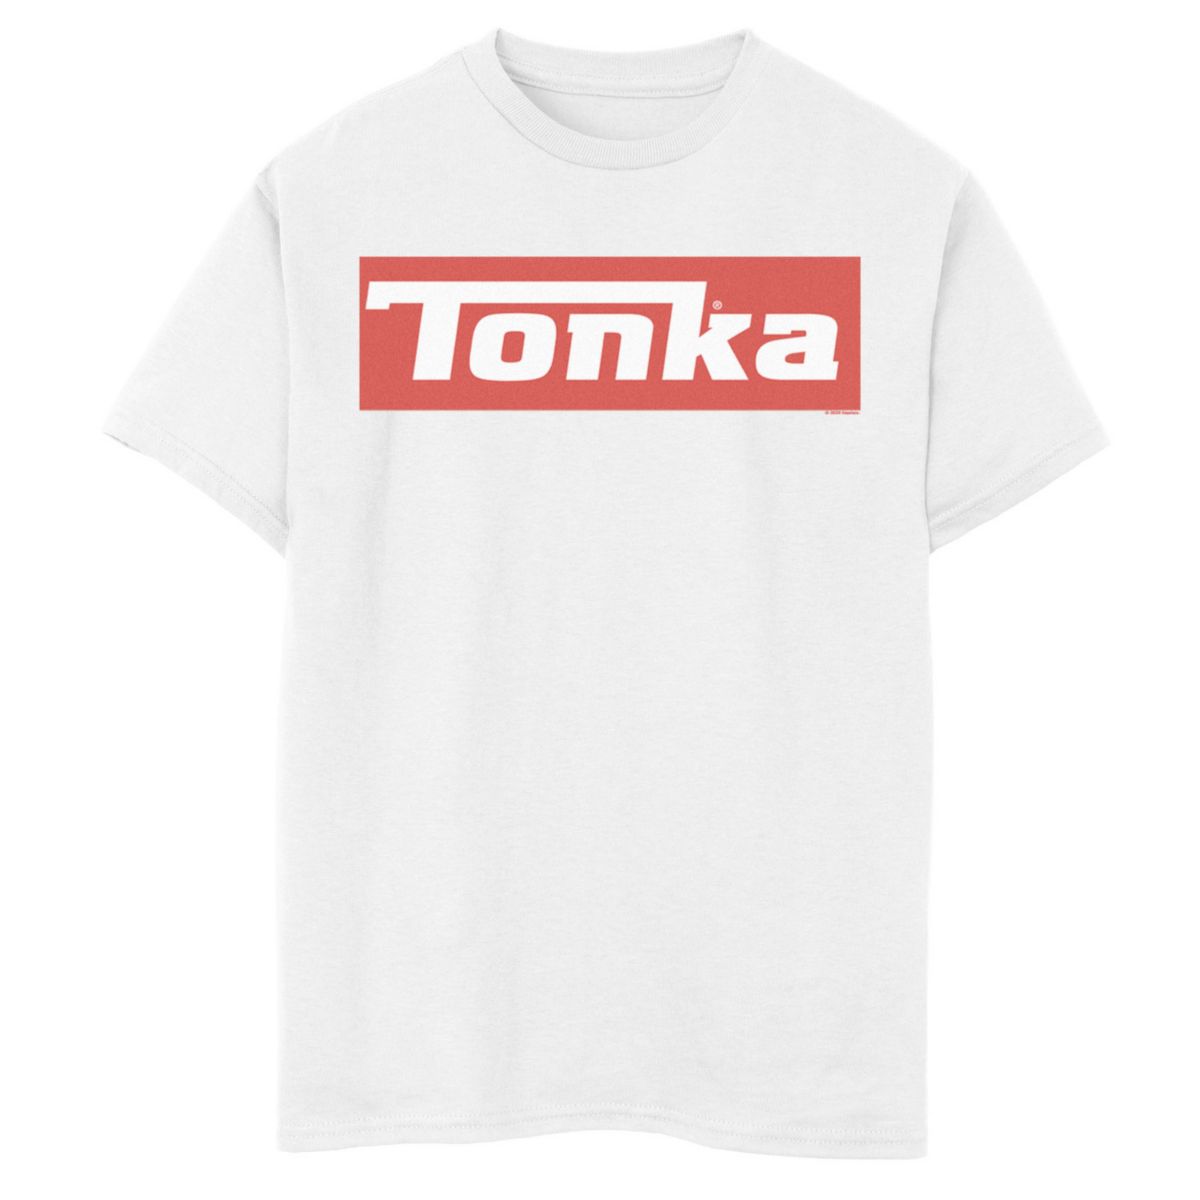 Футболка Tonka Simple Red с графическим логотипом для мальчиков 8-20 лет Tonka